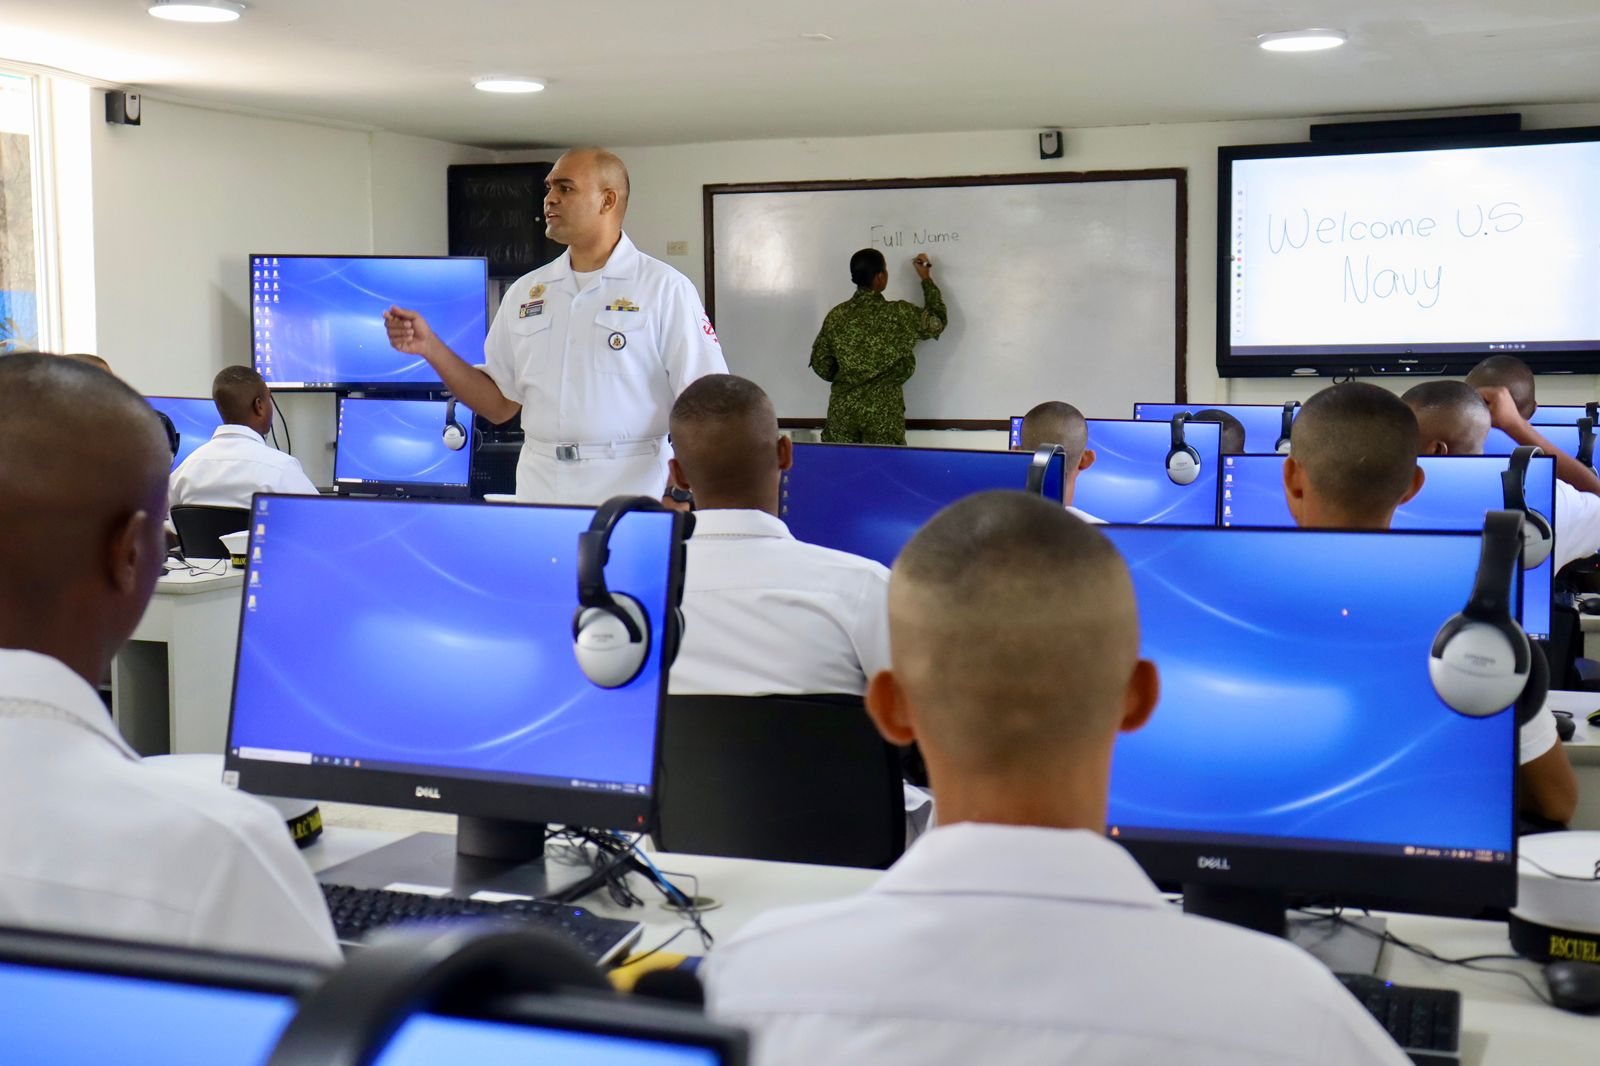 Misión naval americana dona equipos tecnológicos al centro de idiomas de la armada de Colombia